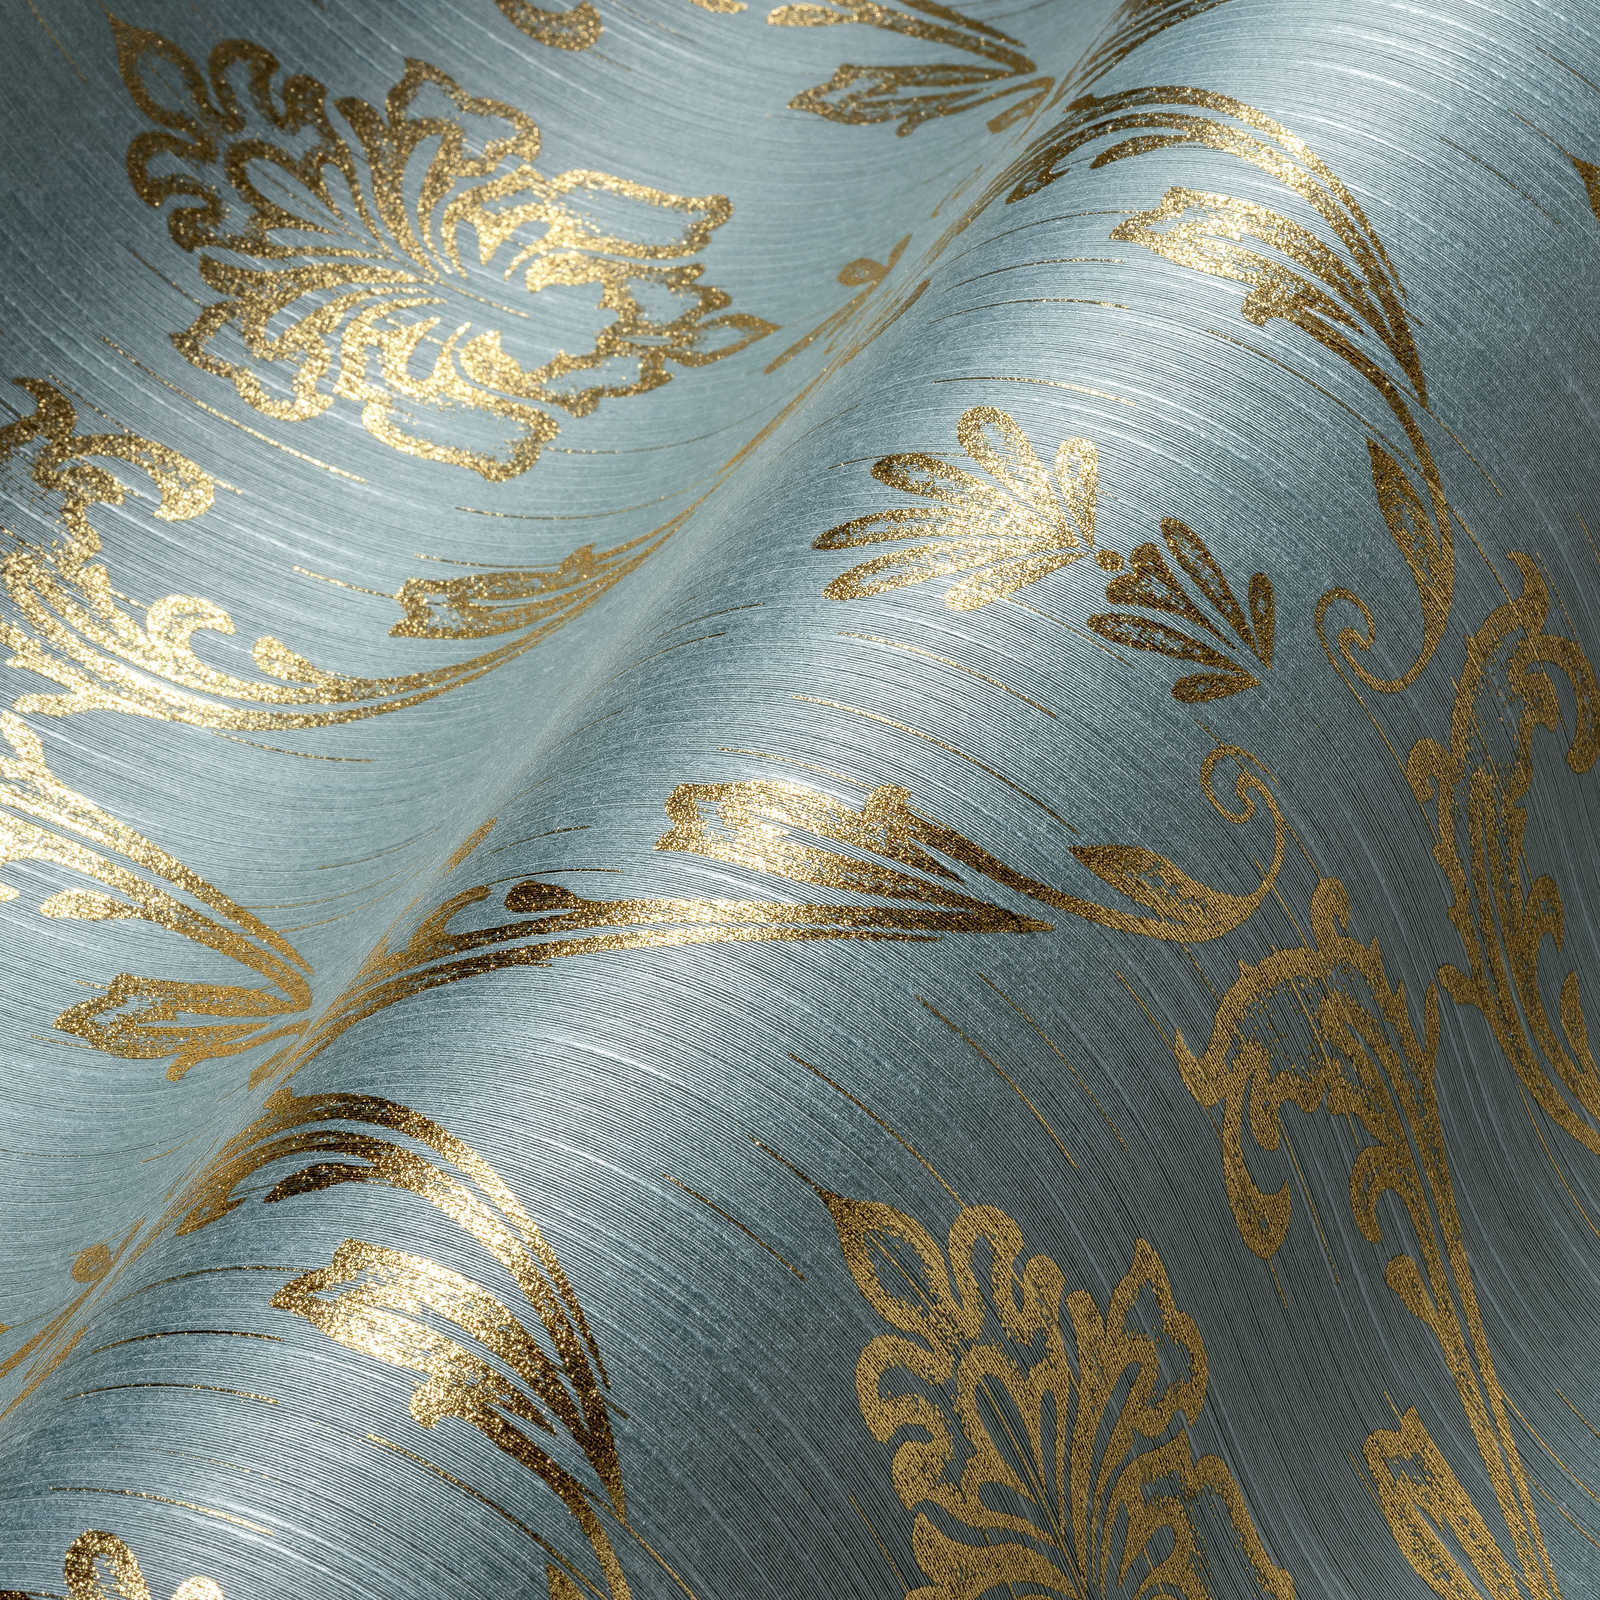             Papel pintado ornamental con elementos florales en oro - oro, azul, verde
        